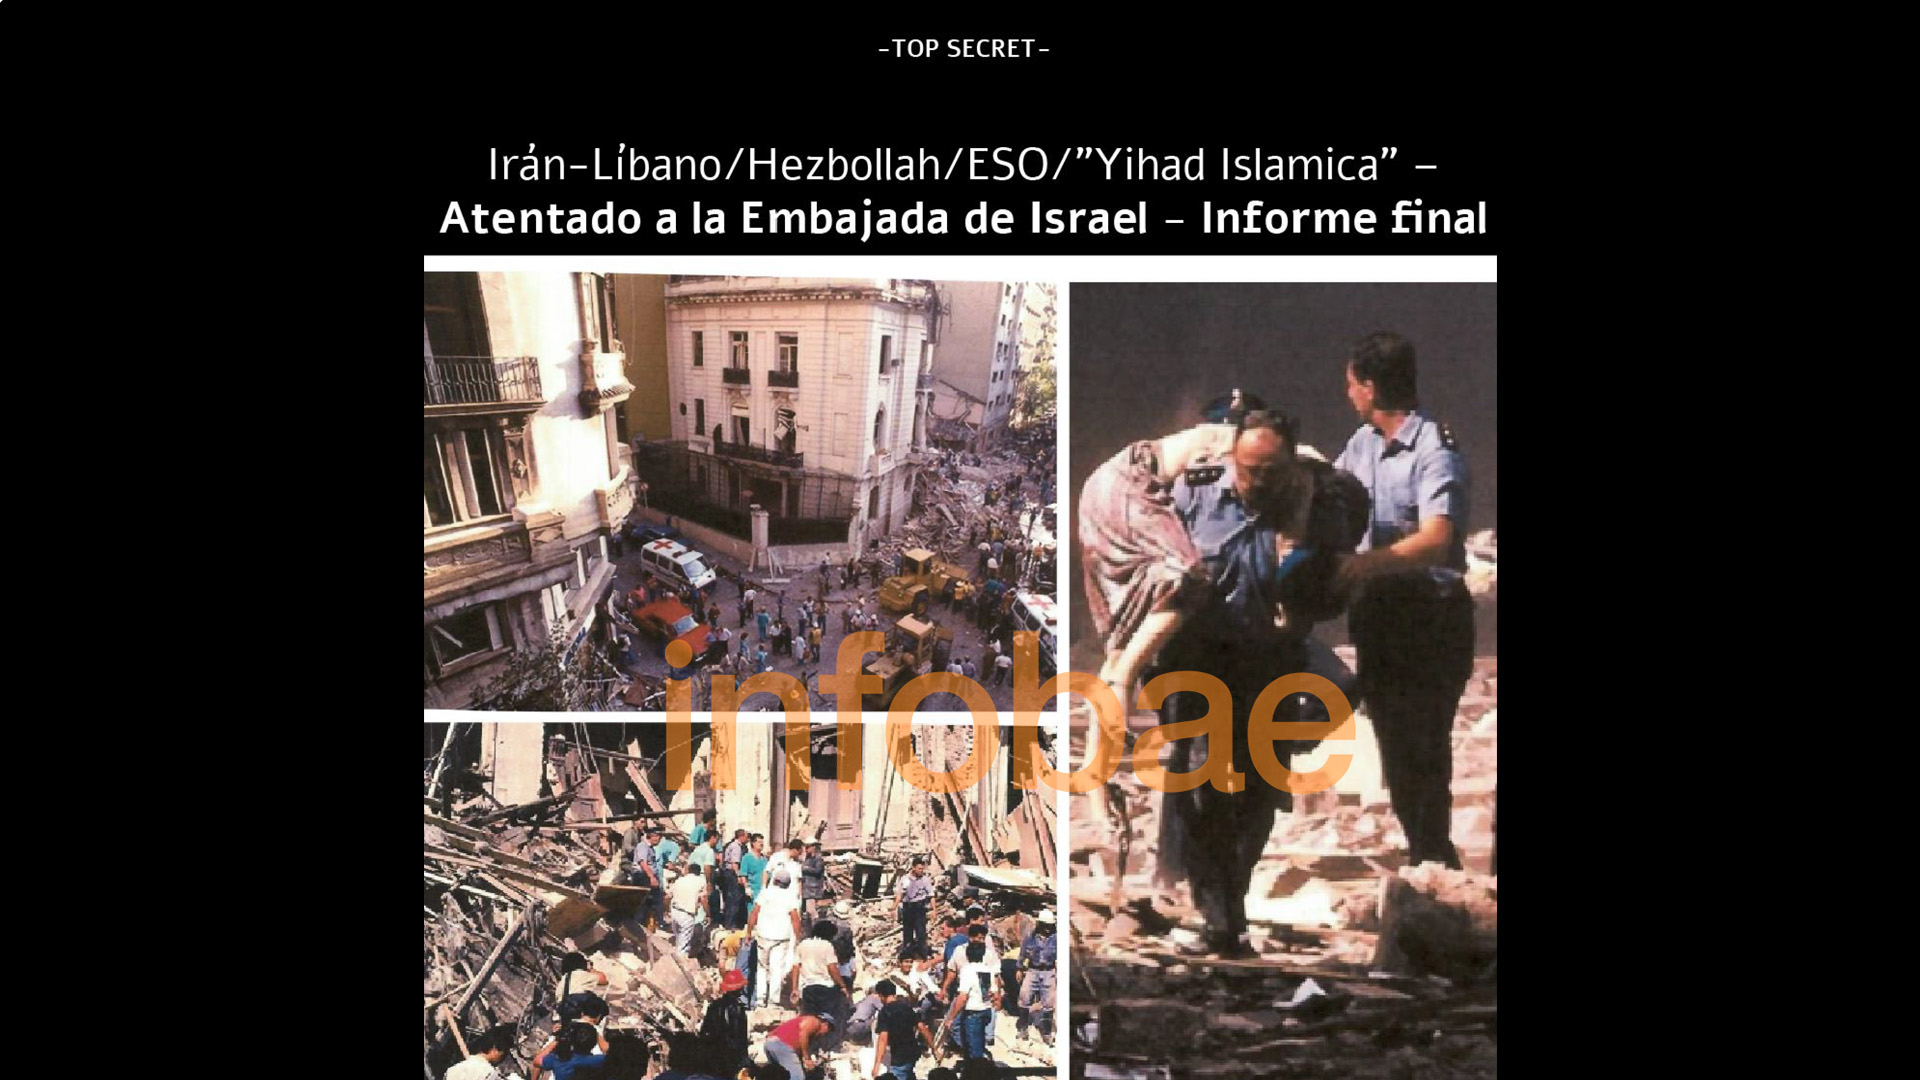 El ataque a la Embajada de Israel ocurrió en 1992